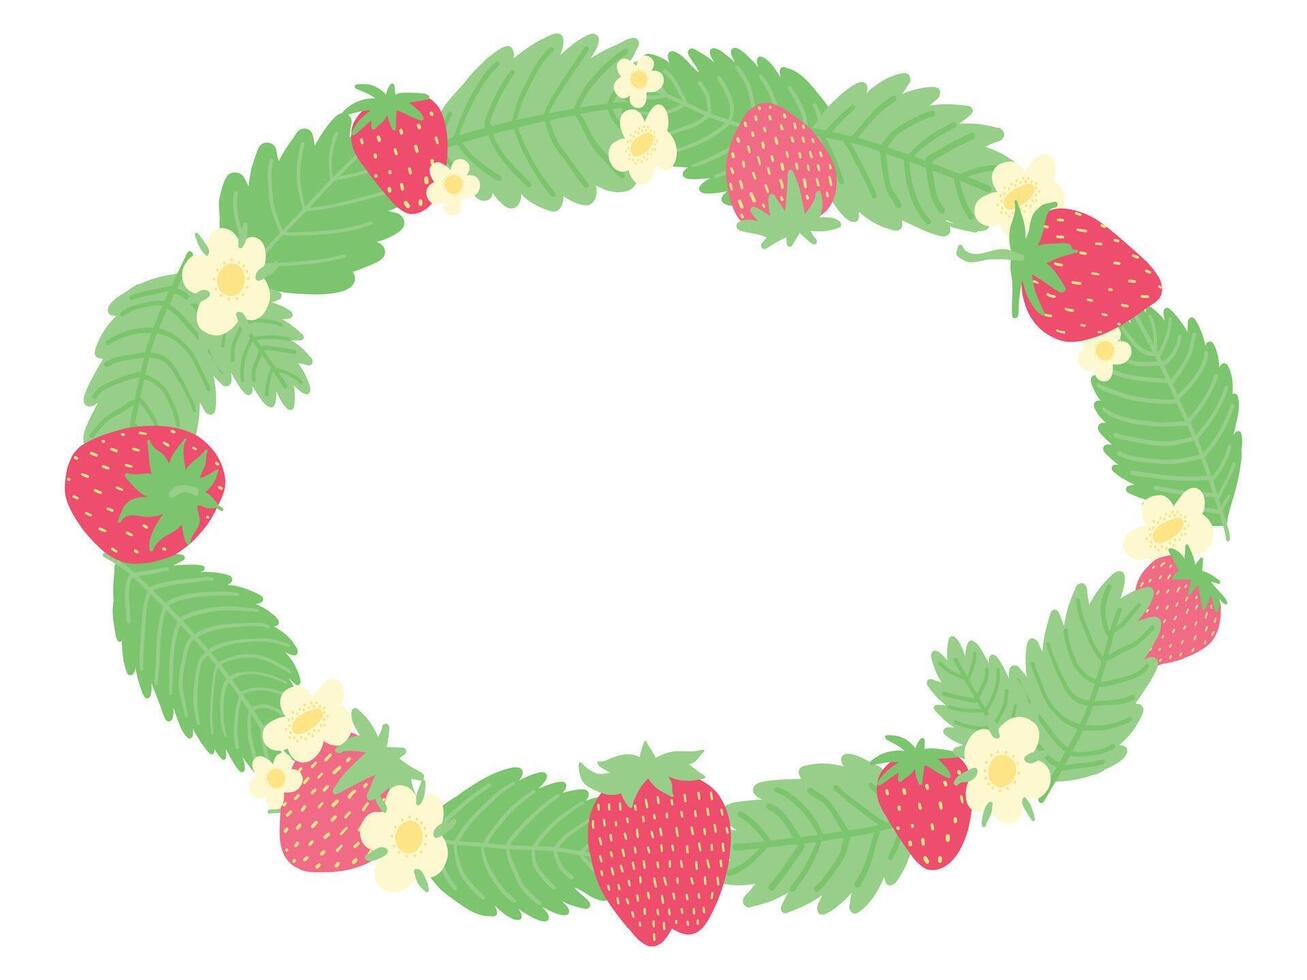 verrukkelijk circulaire slinger gemaakt van aardbeien, levendig groen bladeren, en sierlijk bloemen, gestileerd in een vrolijk ontwerp, ideaal voor voorjaar en zomer decor, uitnodigingen, of thematisch ontwerpen. vector